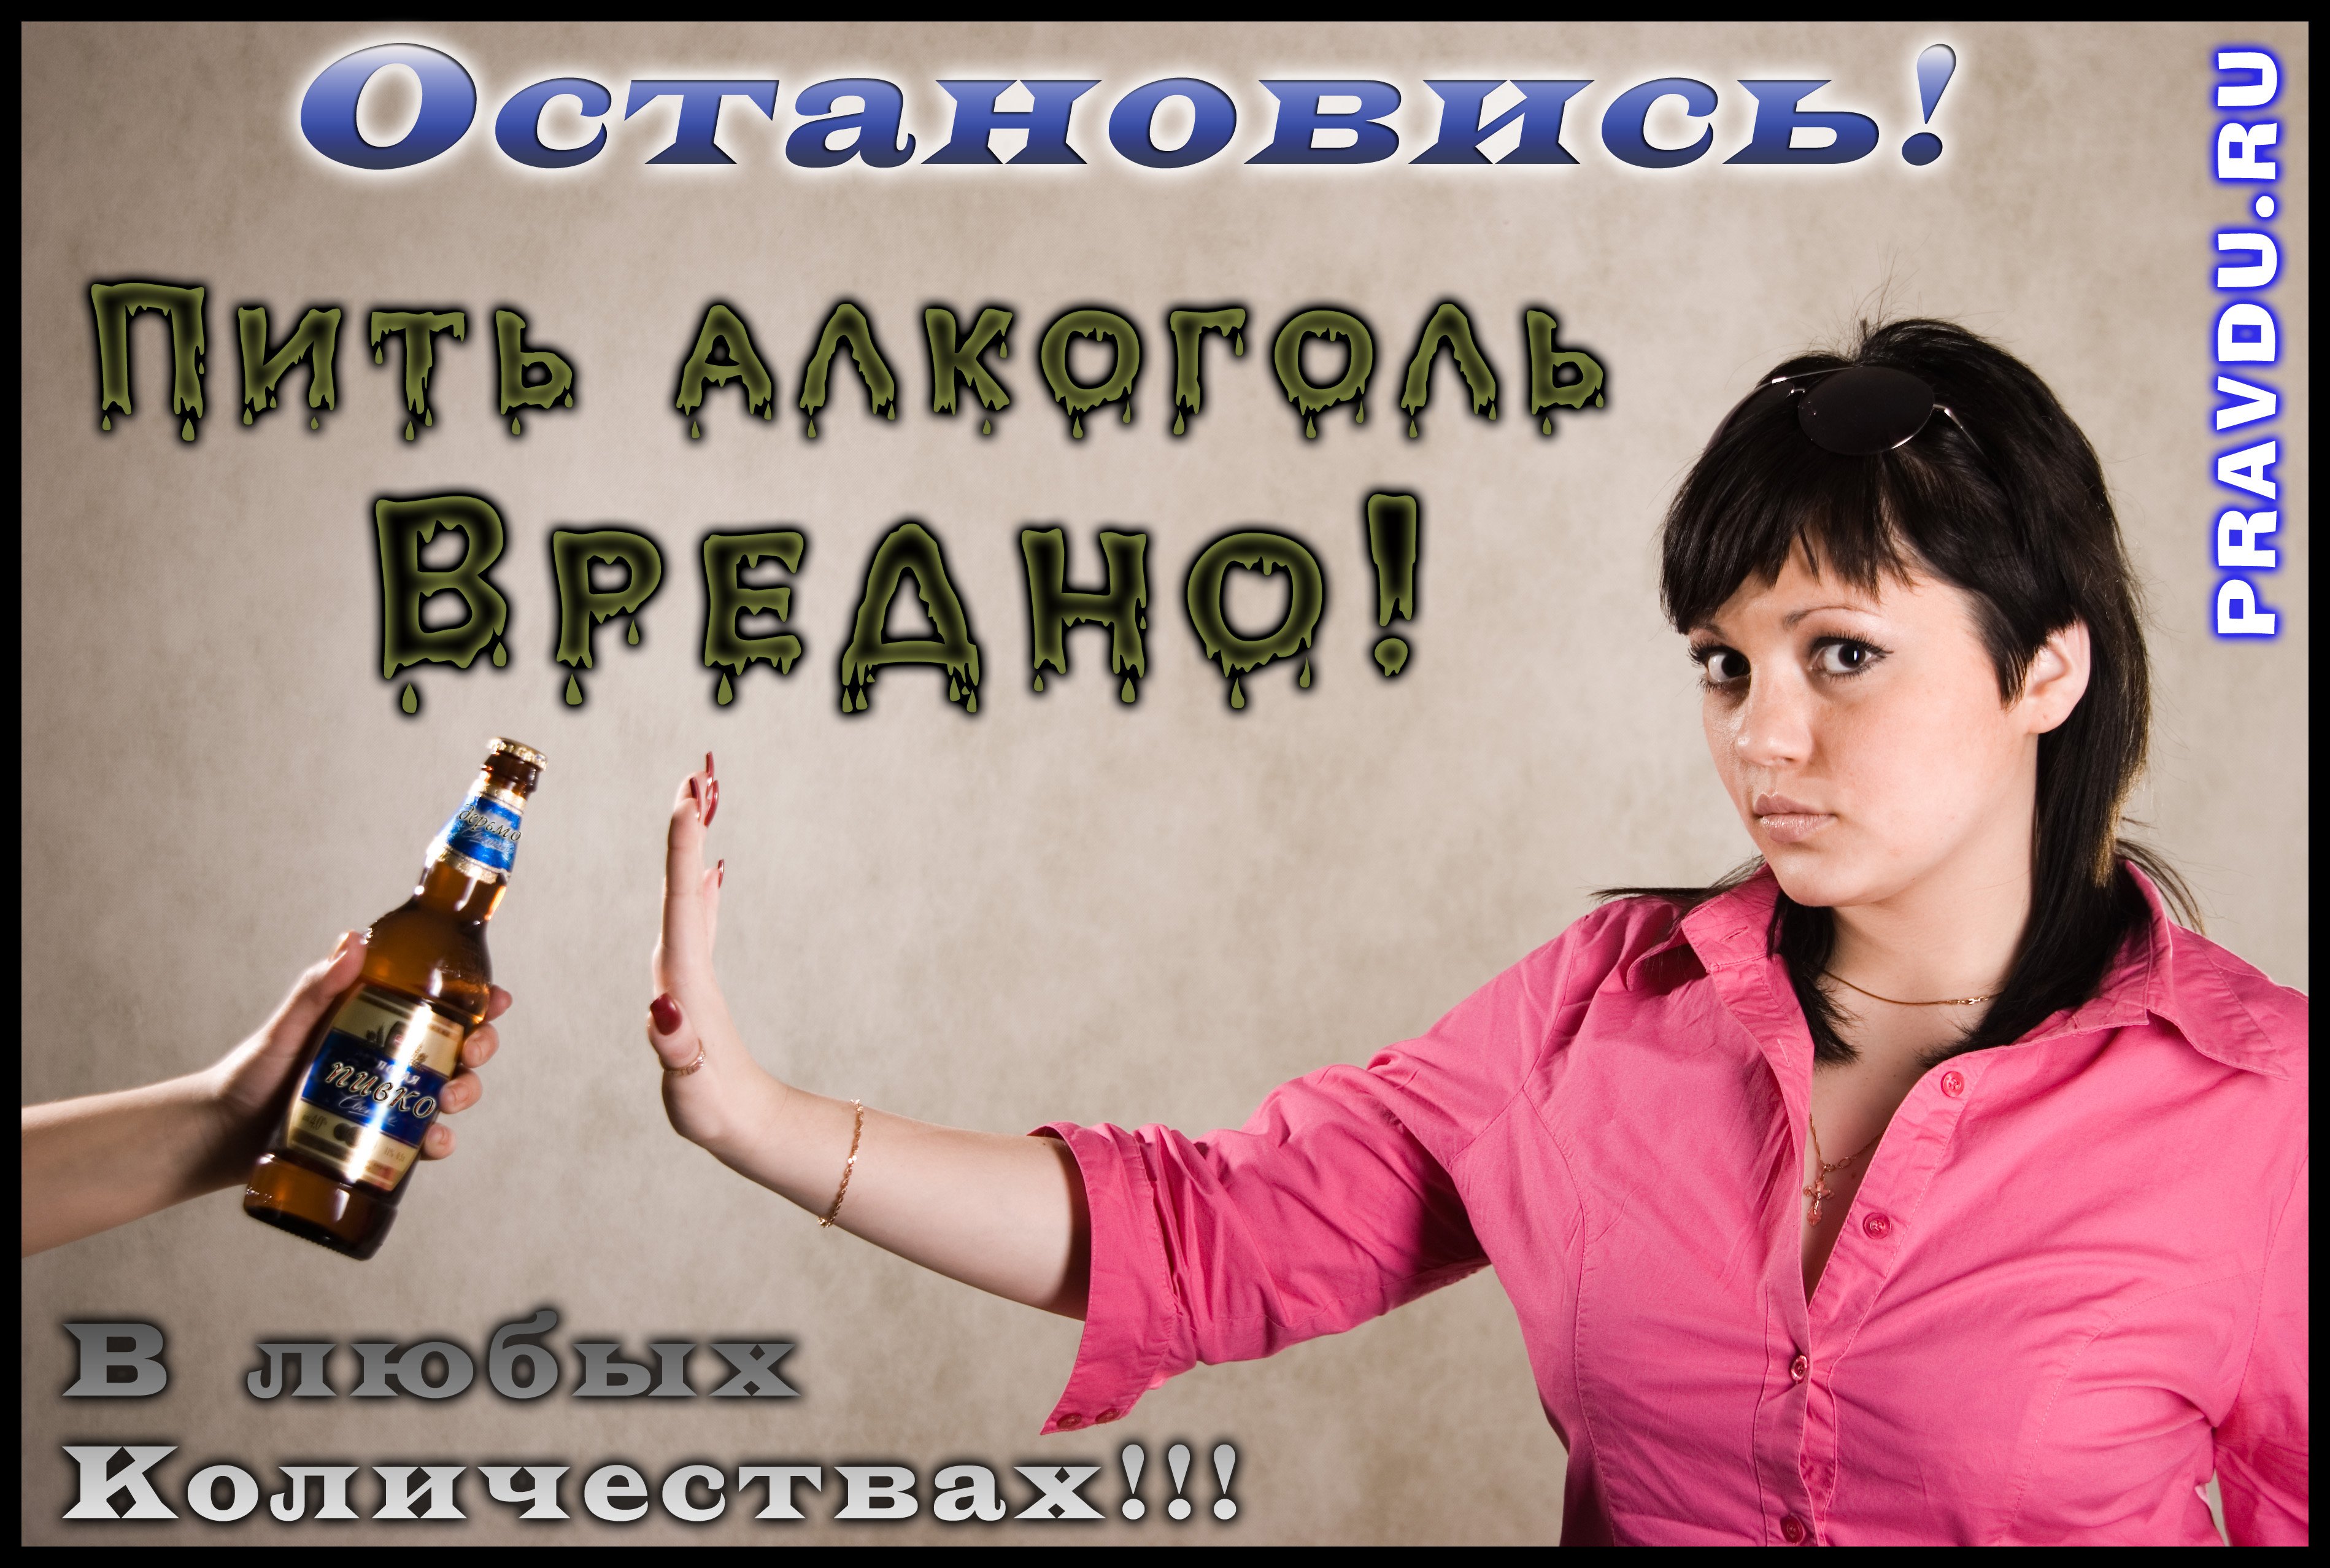 Человек пьет не может остановится. Пить вредно. Открытки о вреде пьянства.